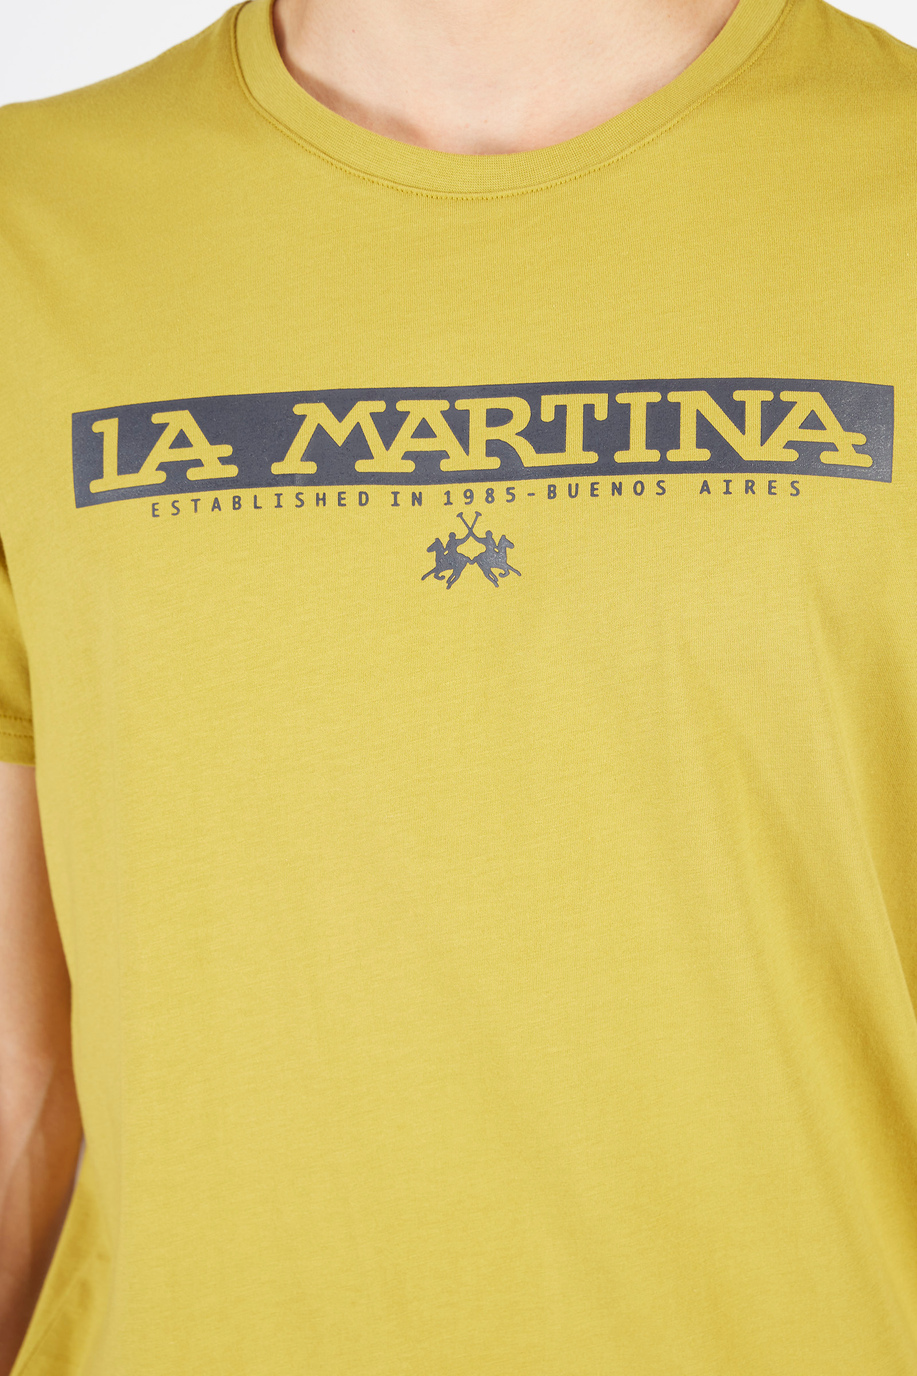 T-shirt da uomo a maniche corte modello girocollo regular fit - Regali monogrammati per lui | La Martina - Official Online Shop